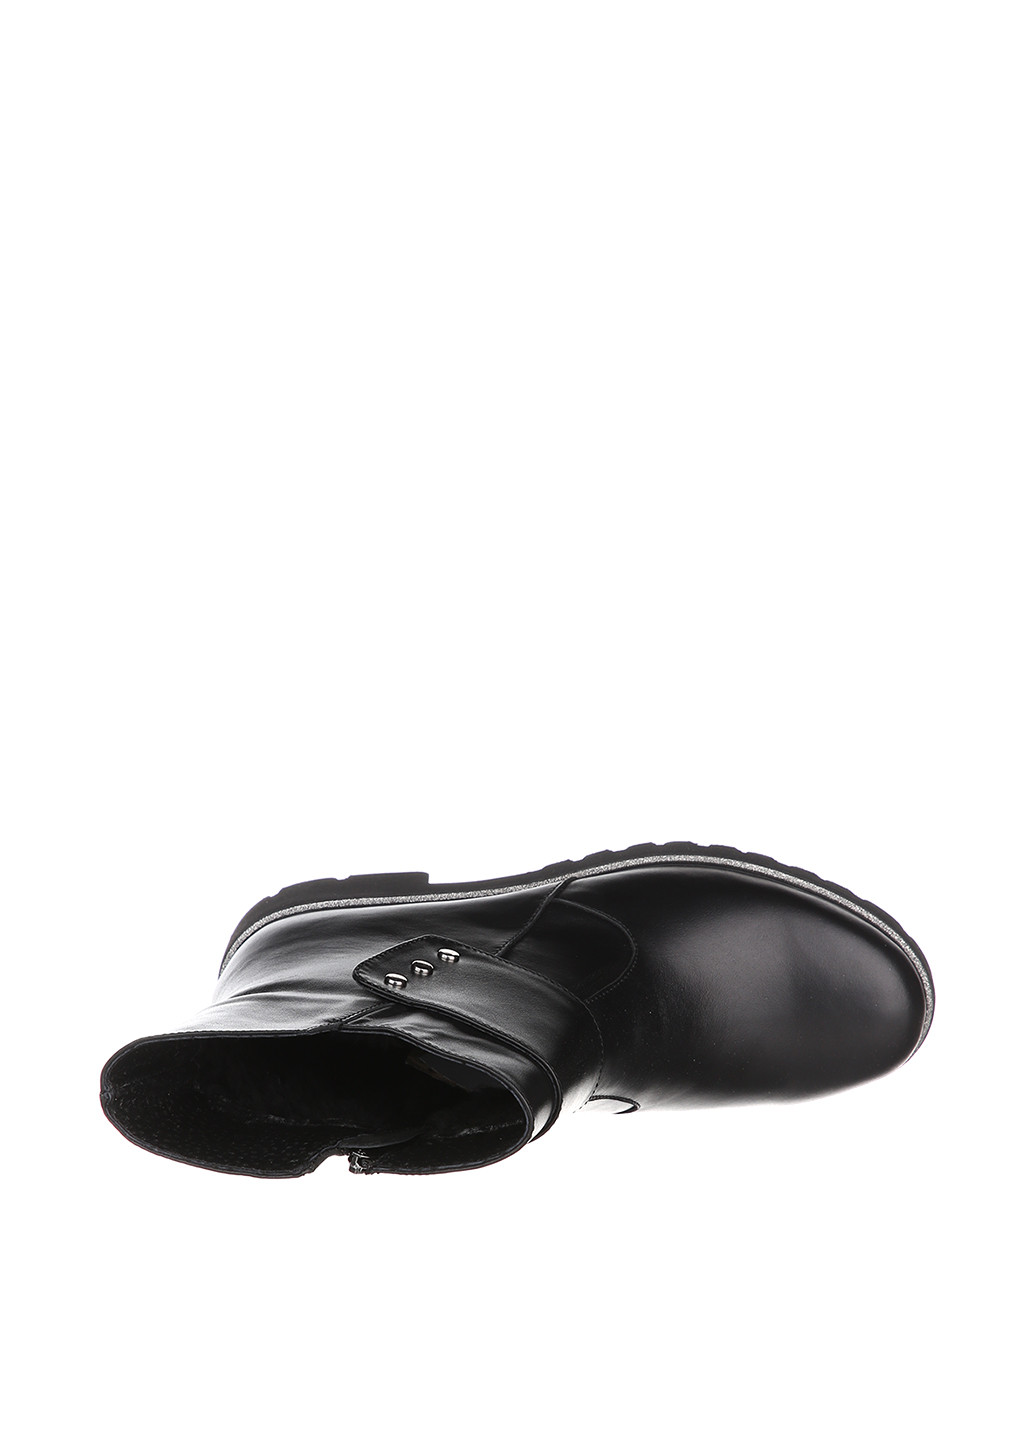 Осенние ботинки чопперы Roberto Maurizi с металлическими вставками из искусственной кожи